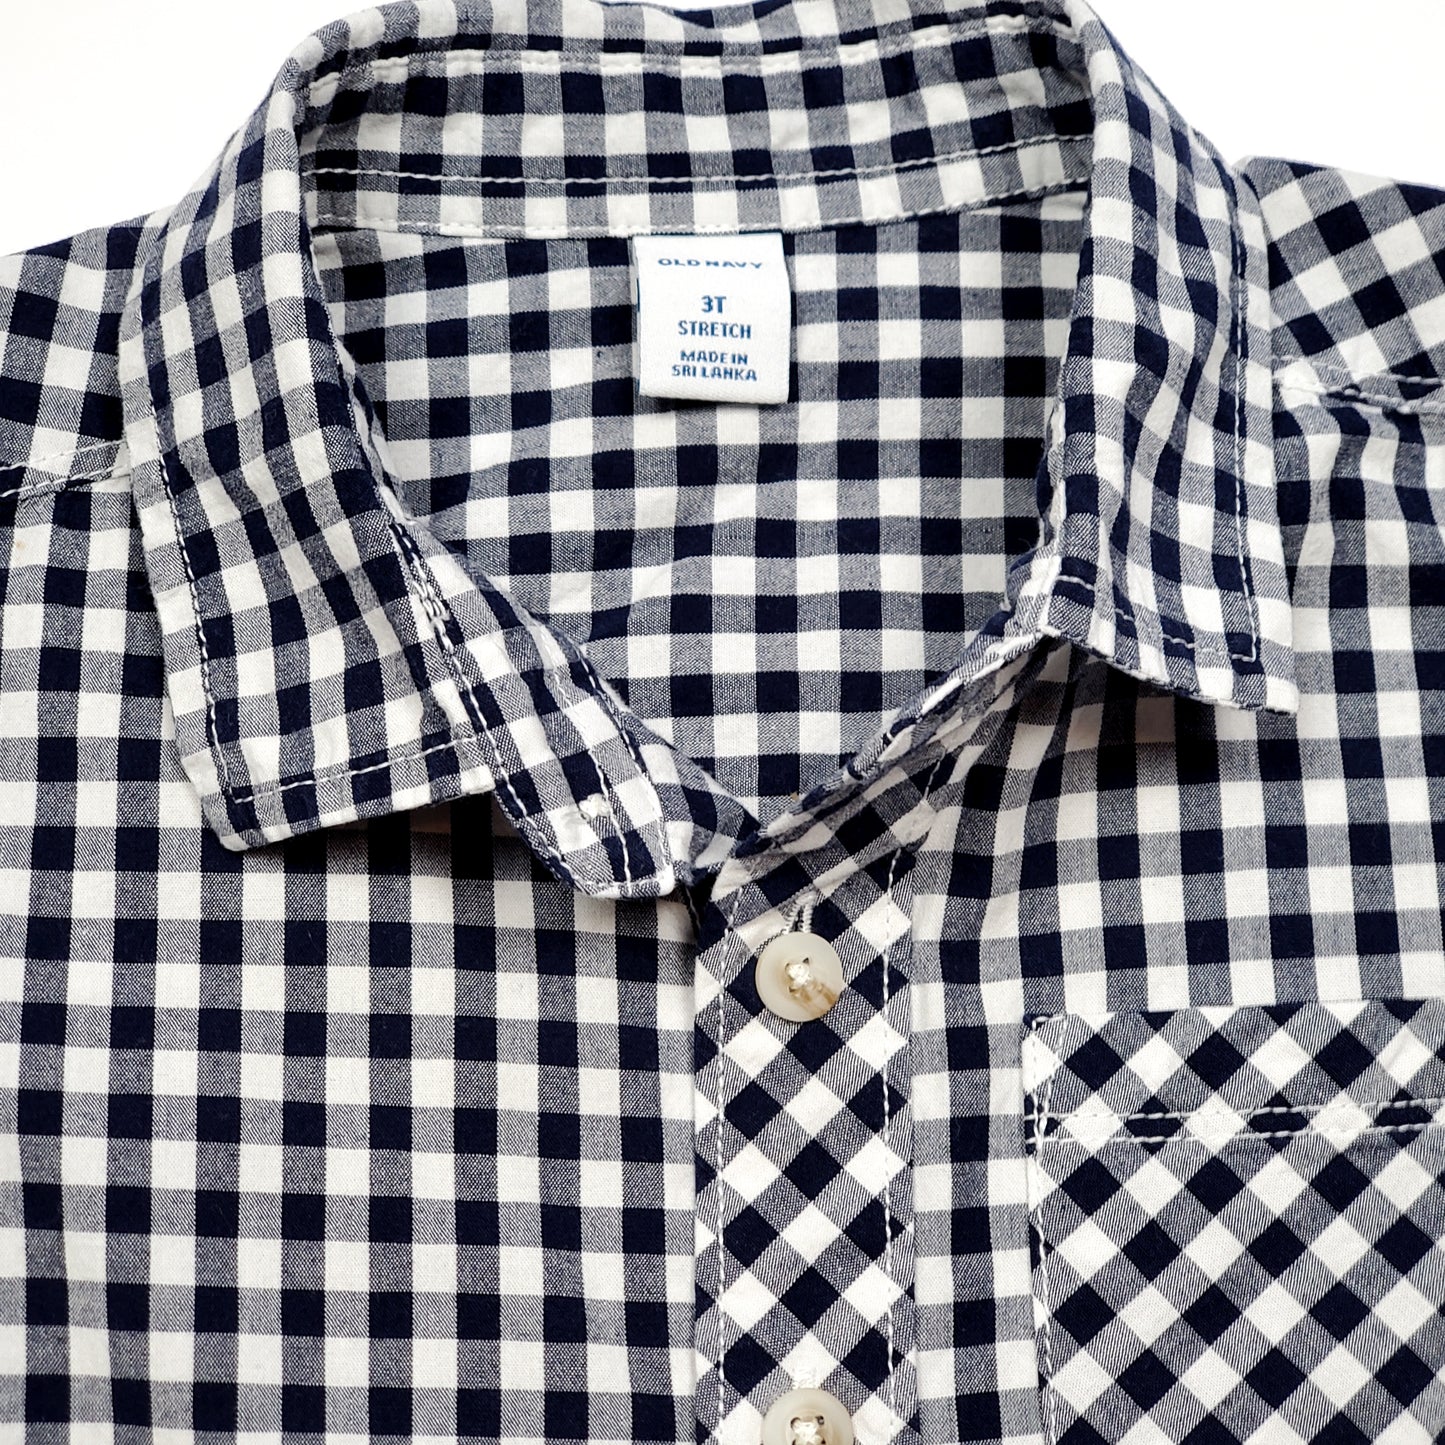 Old Navy Boys Plaid Button Down Shirt Blue Size 5 – Noiram Kids Boutique